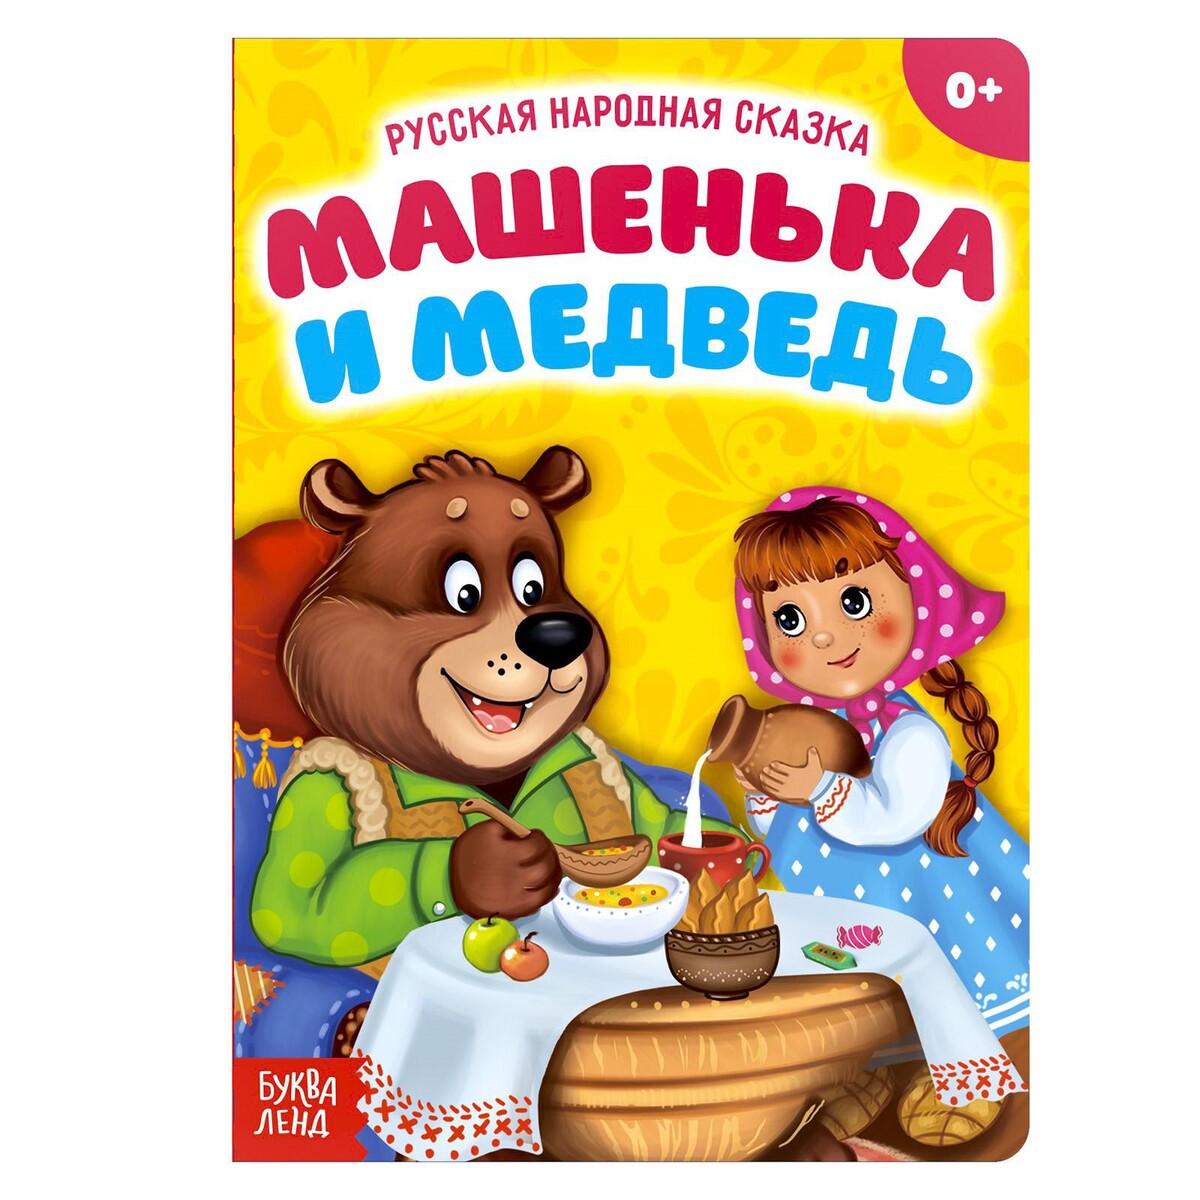 Русская народная сказка как медведь няню искал русская народная сказка